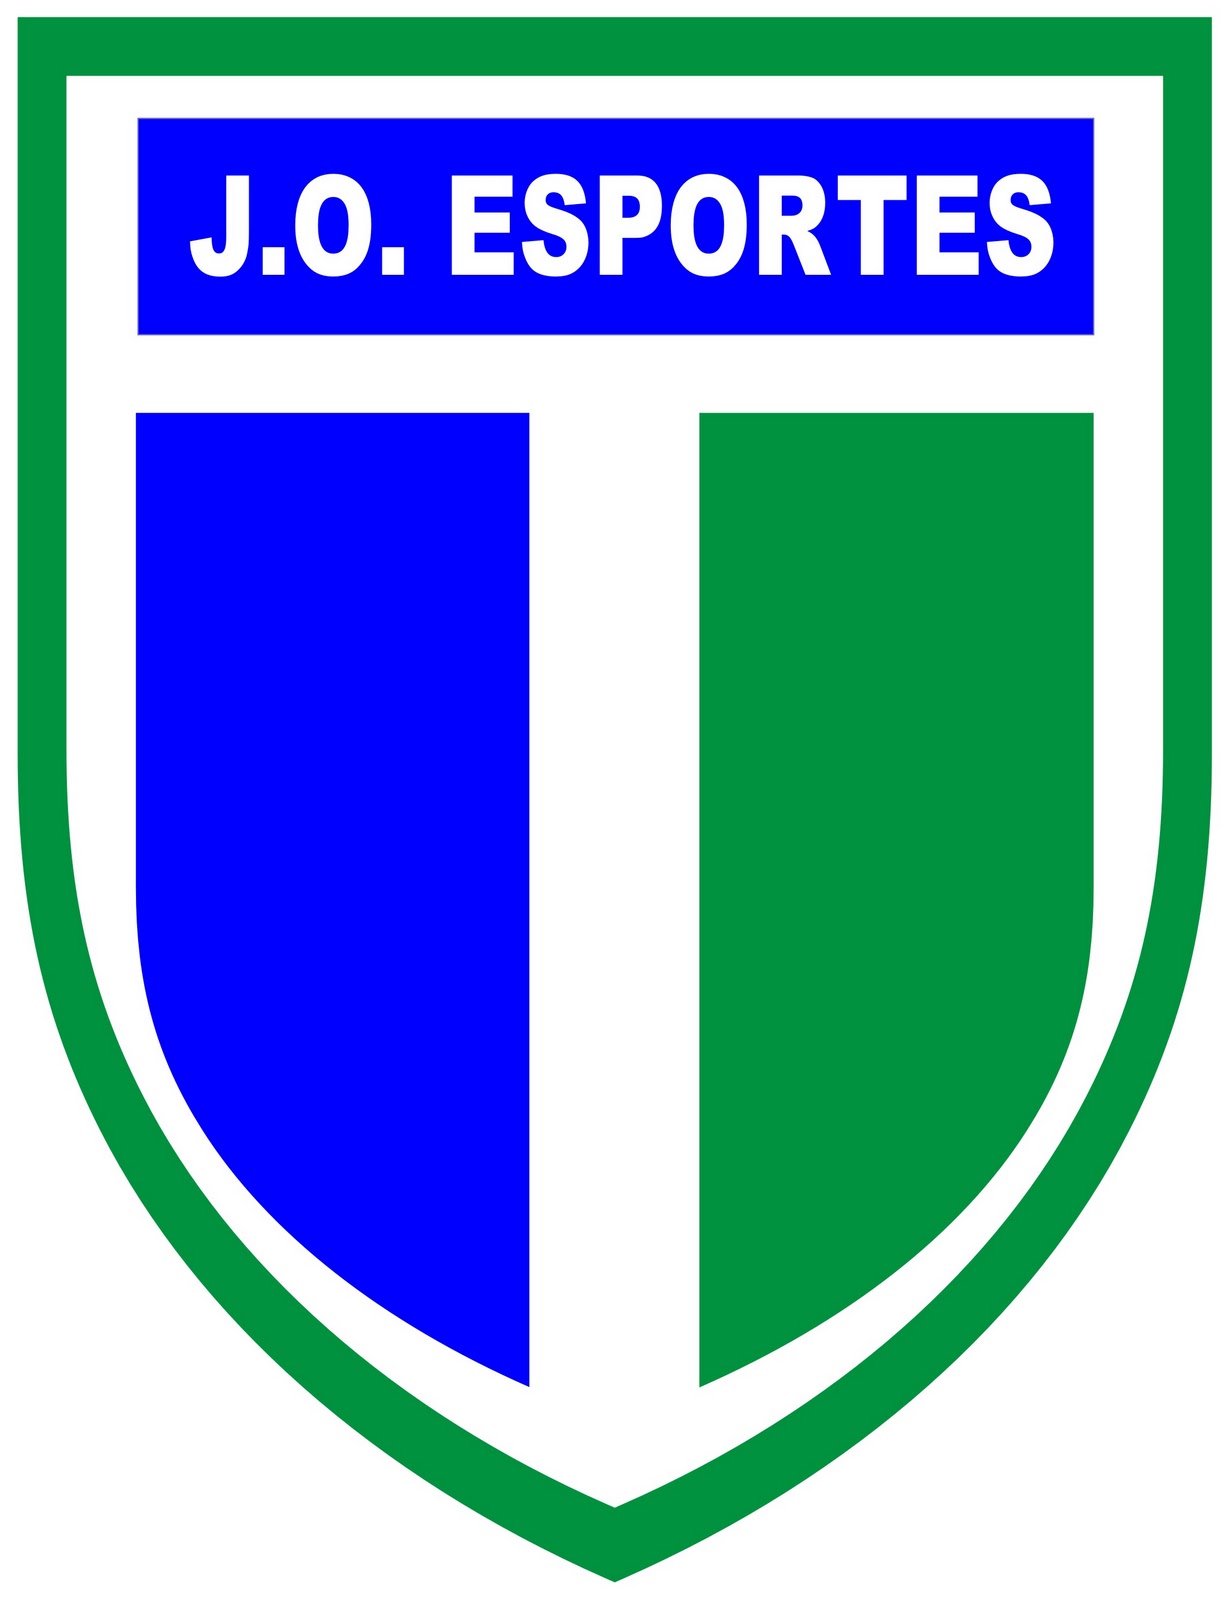 J.O. ESPORTES